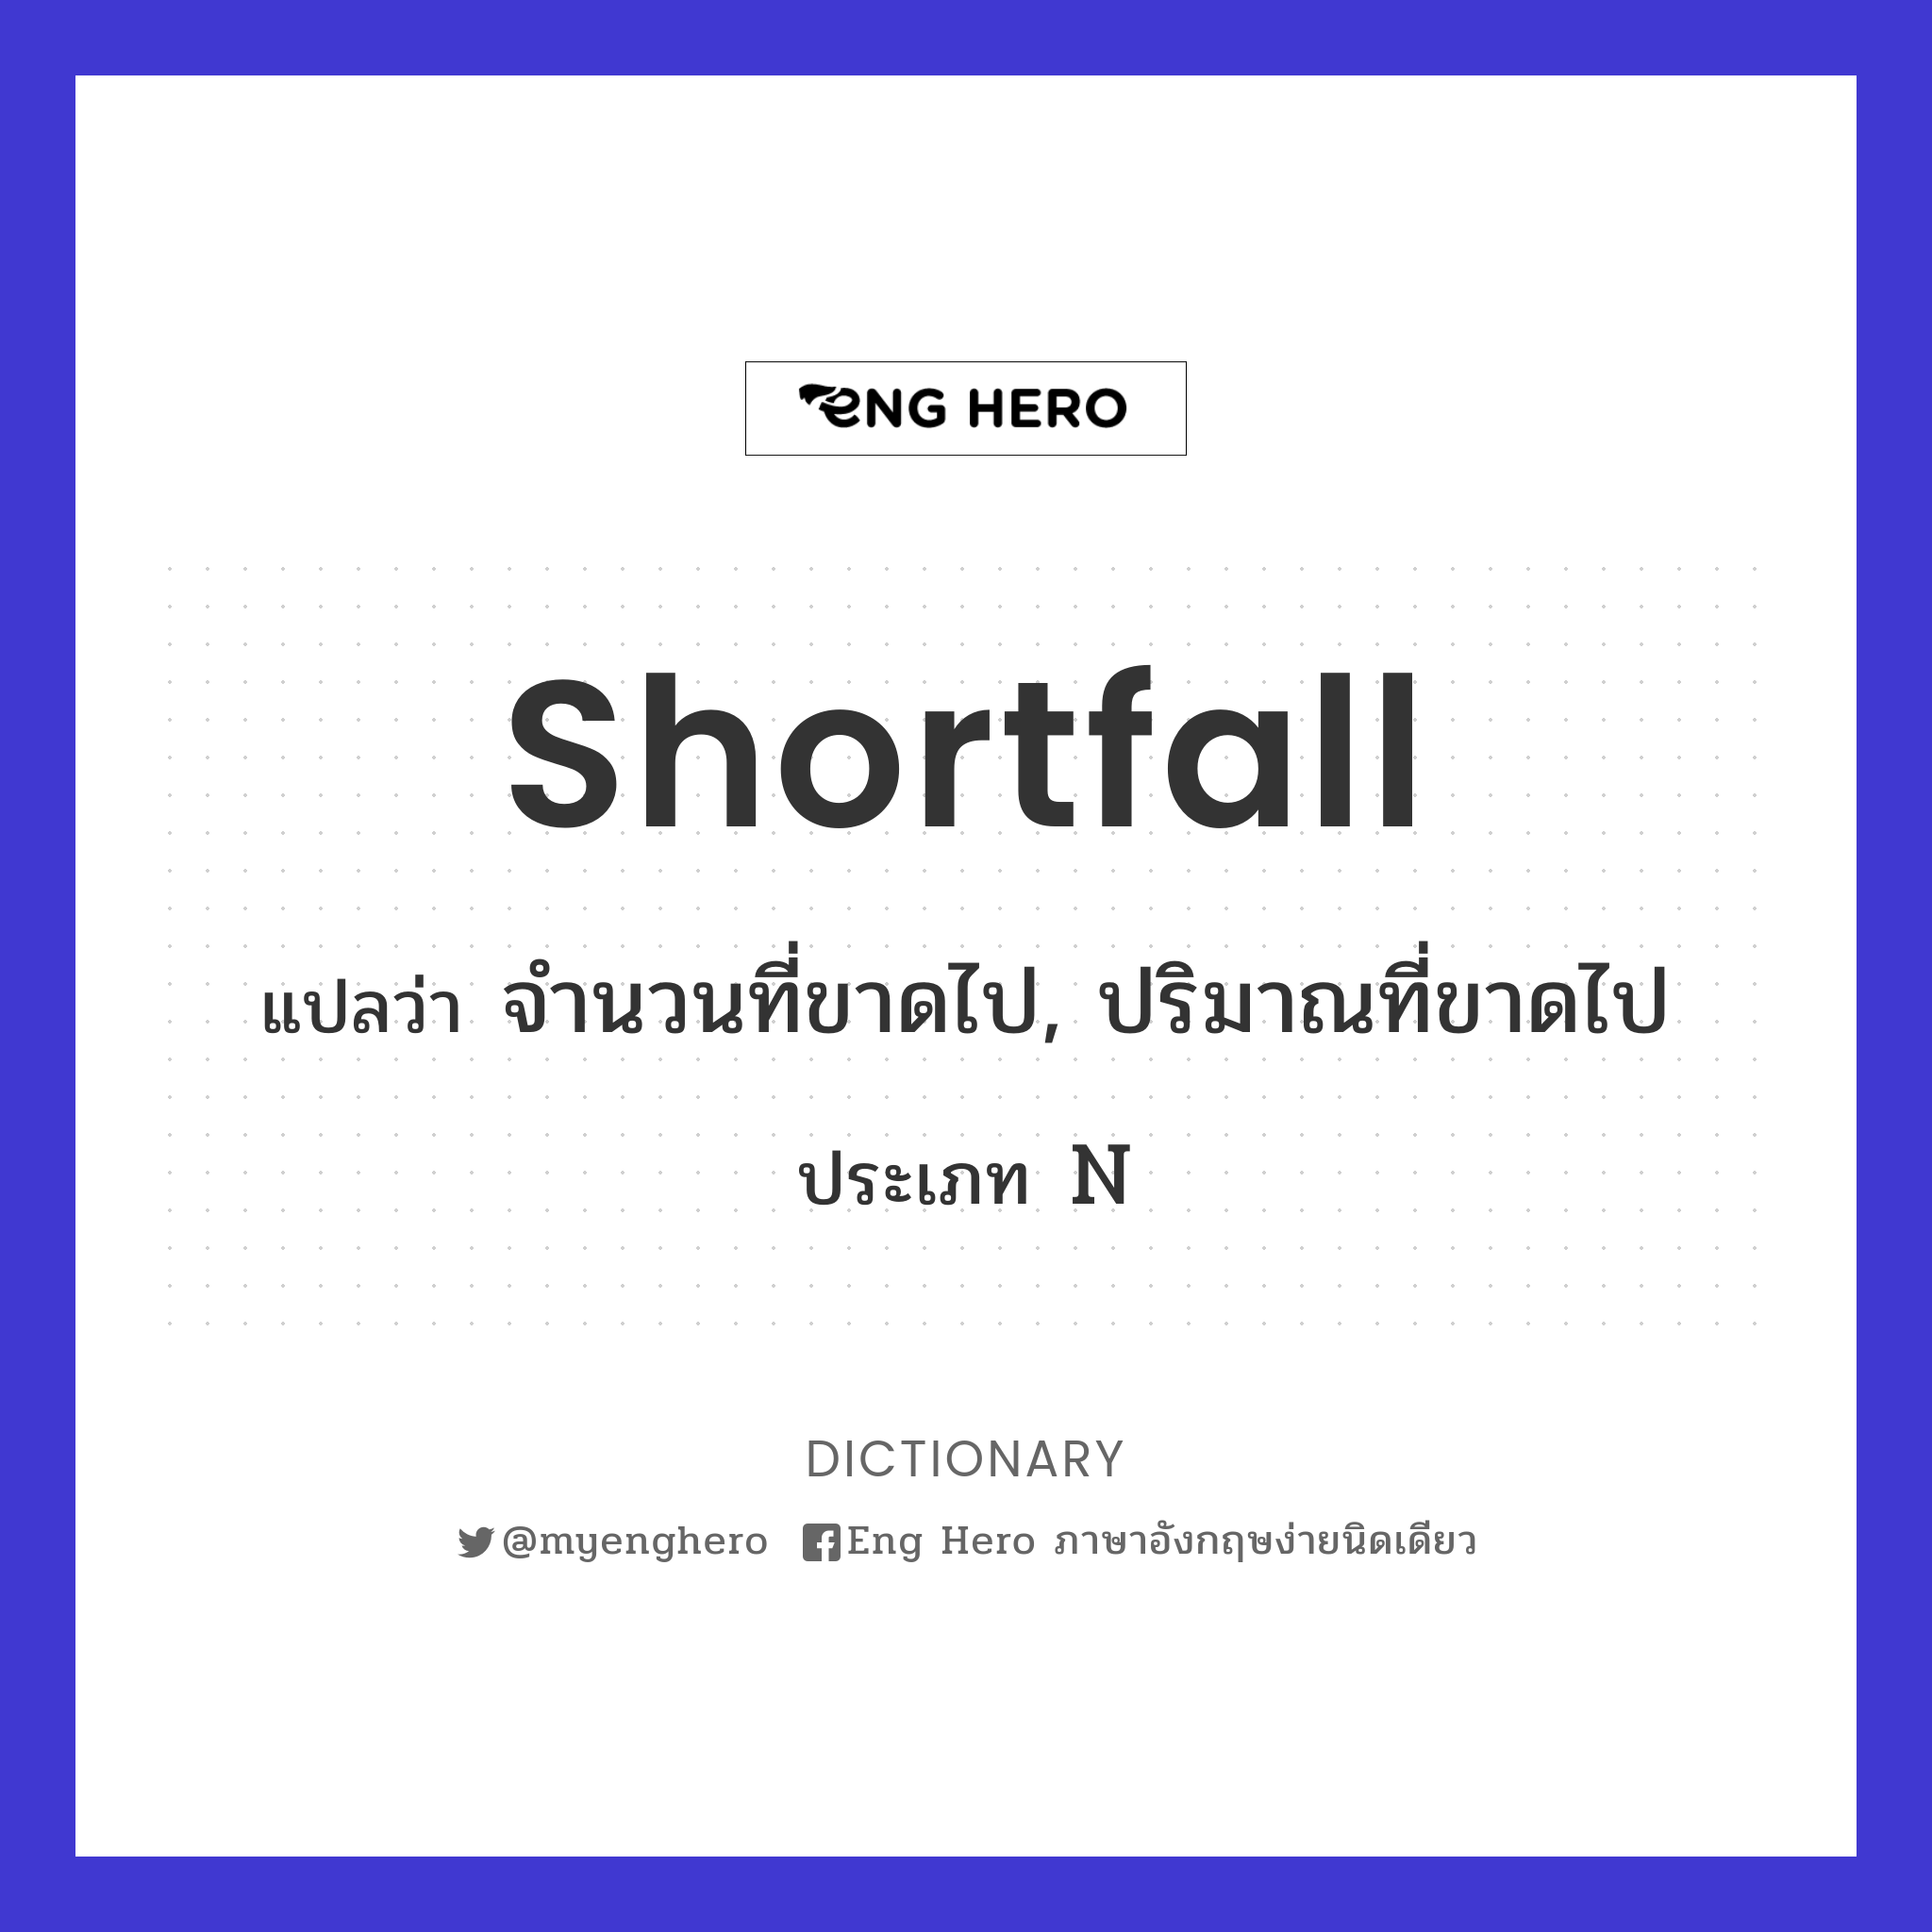 shortfall